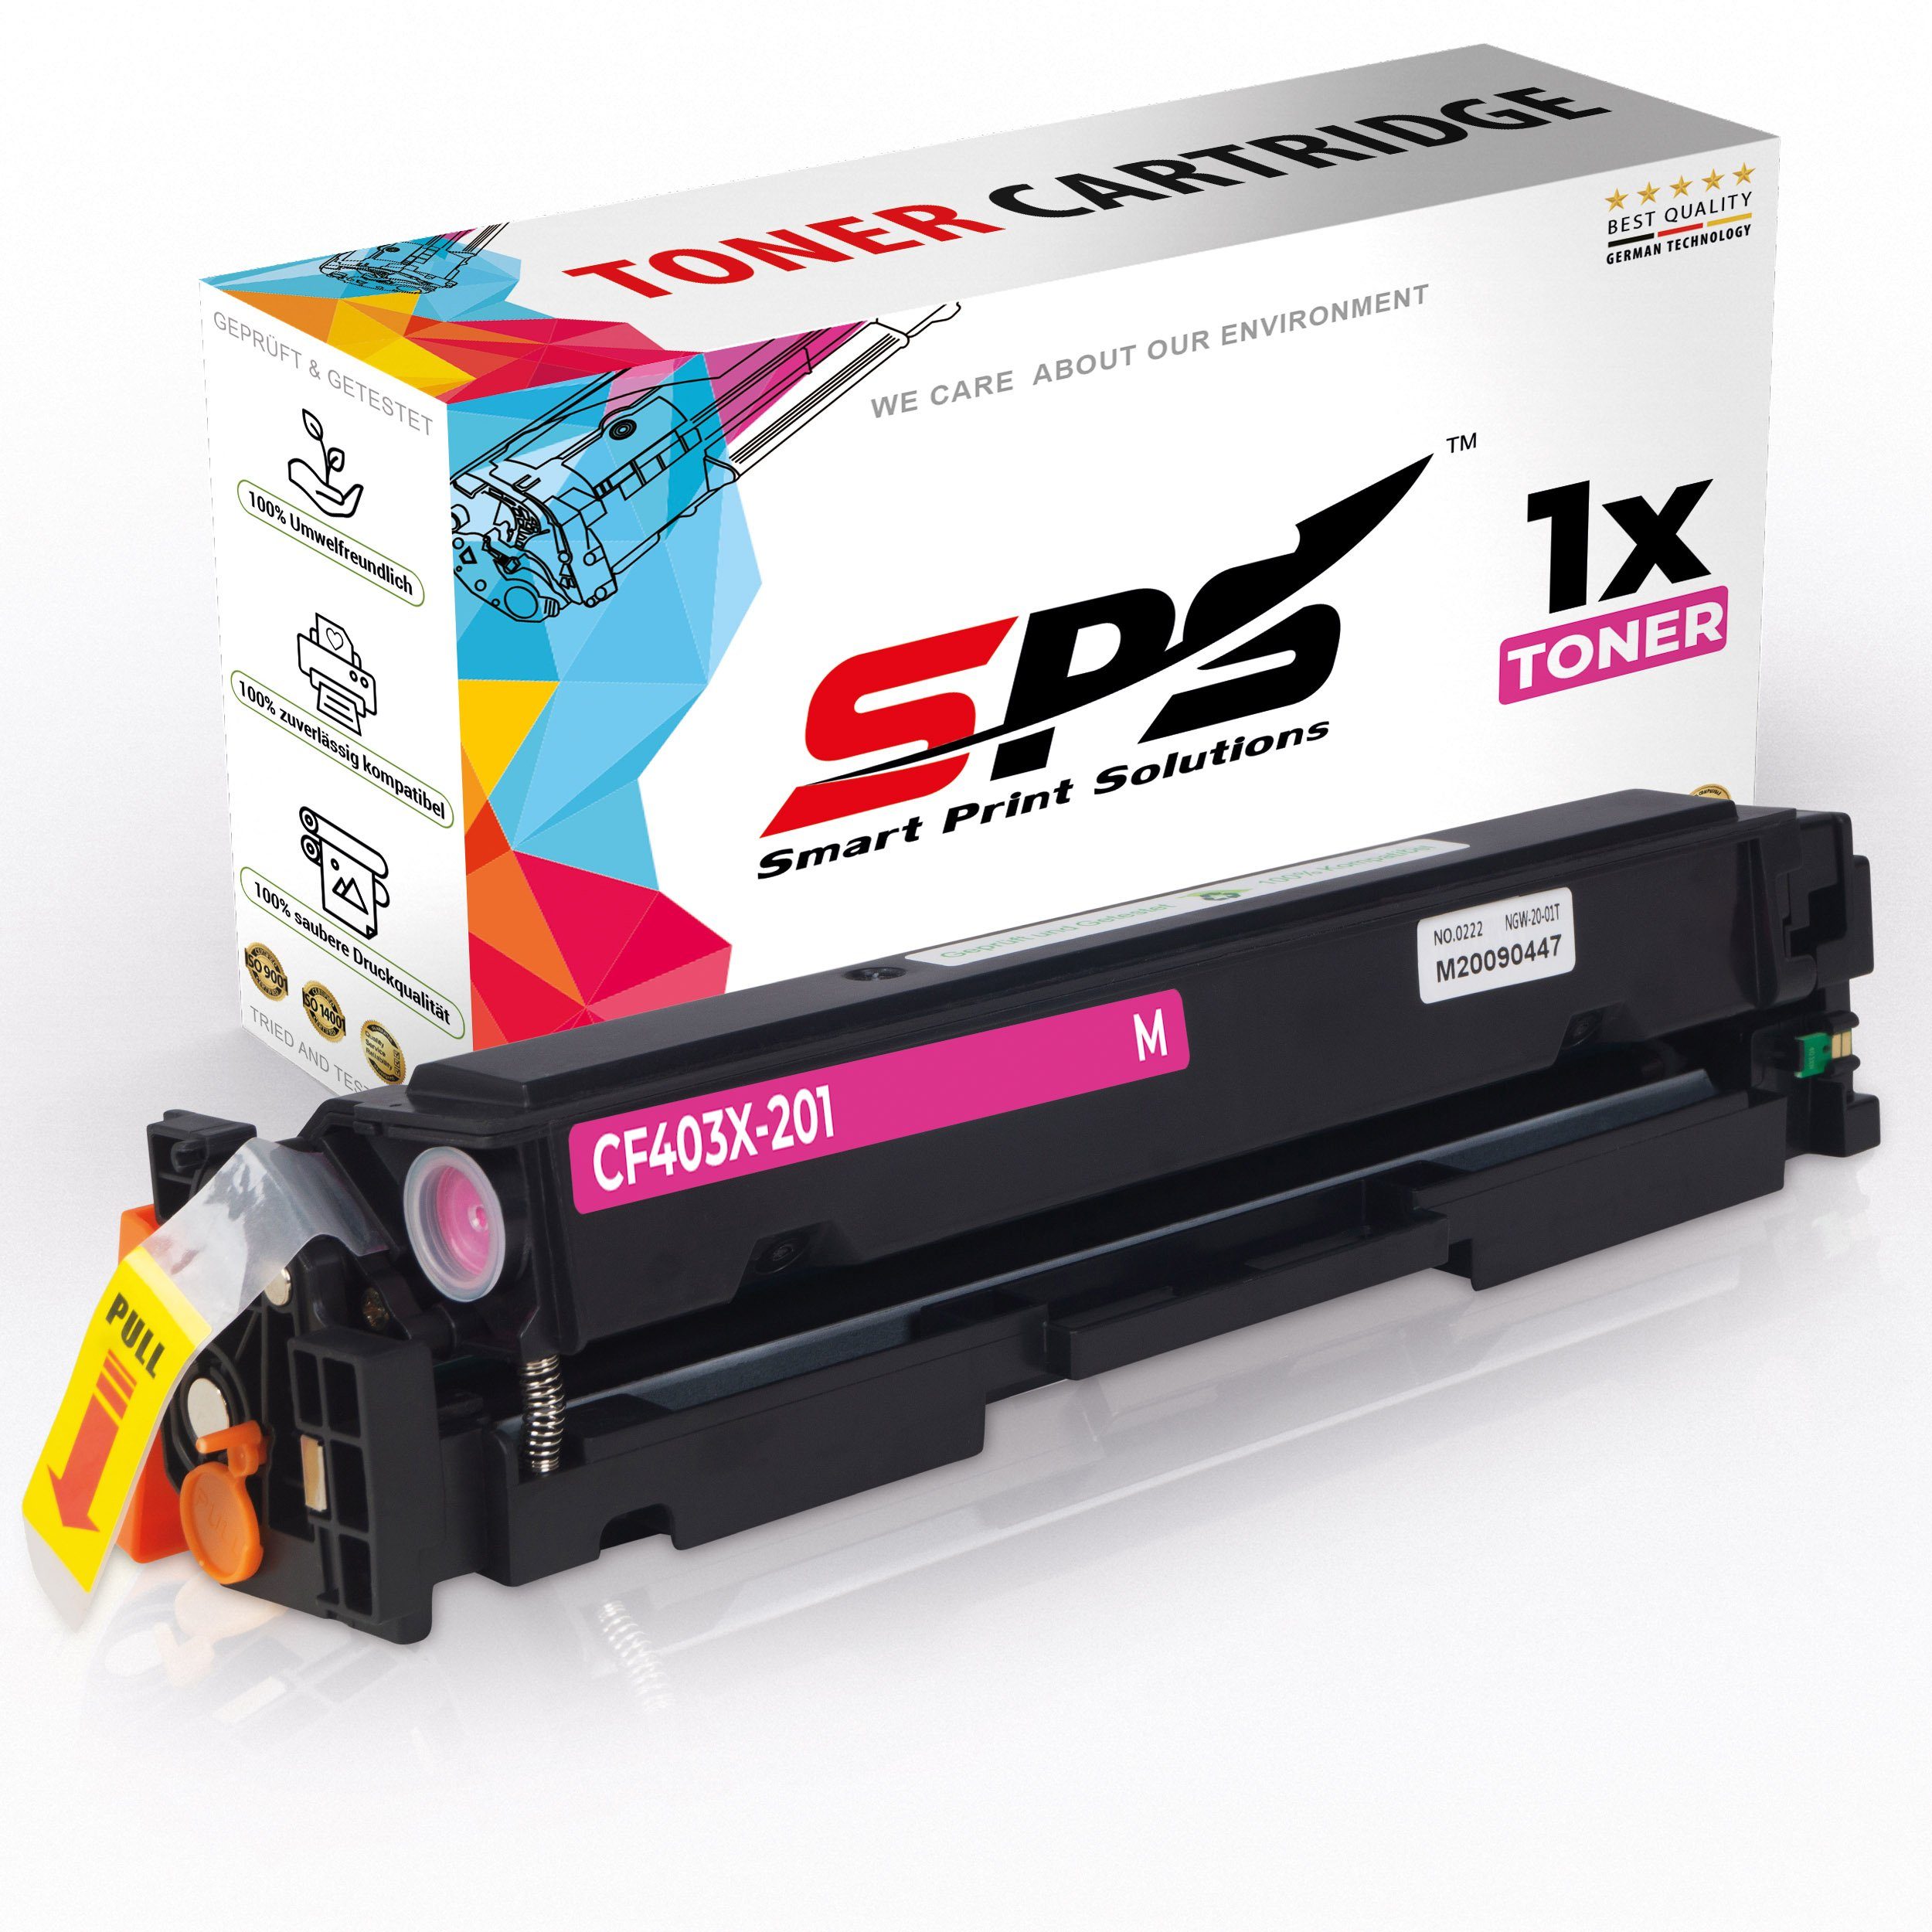 Kompatibel HP SPS 1x Toner) Tonerkartusche M Pro 252 Color für Laserjet (1er DW, Pack, 200